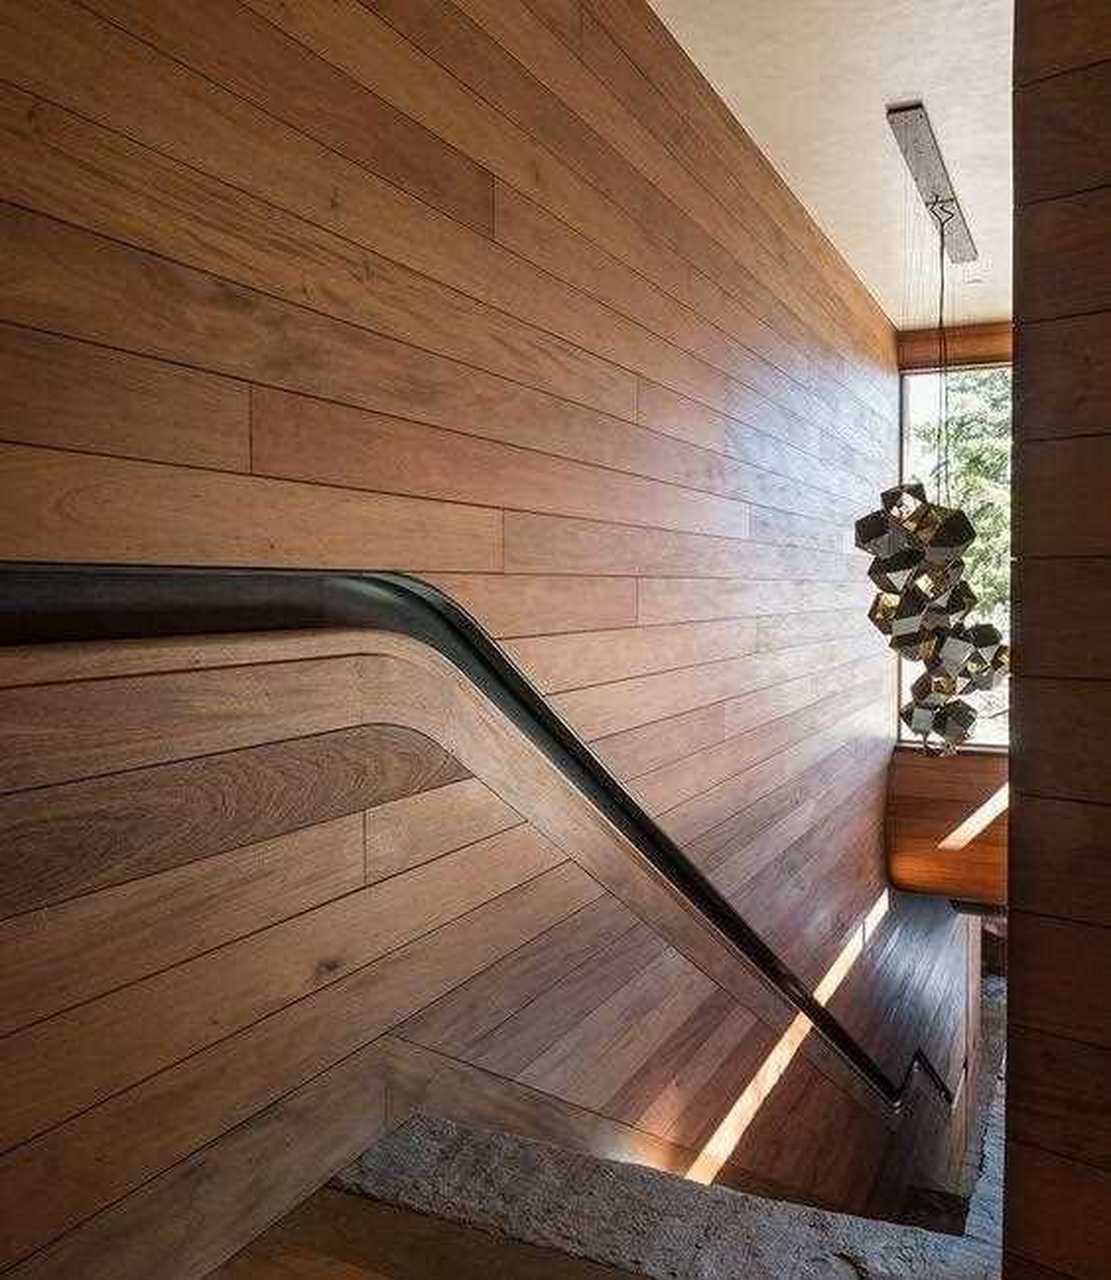 【嵌式楼梯扶手 楼梯的扶手设计成"内嵌式扶手,具有简约